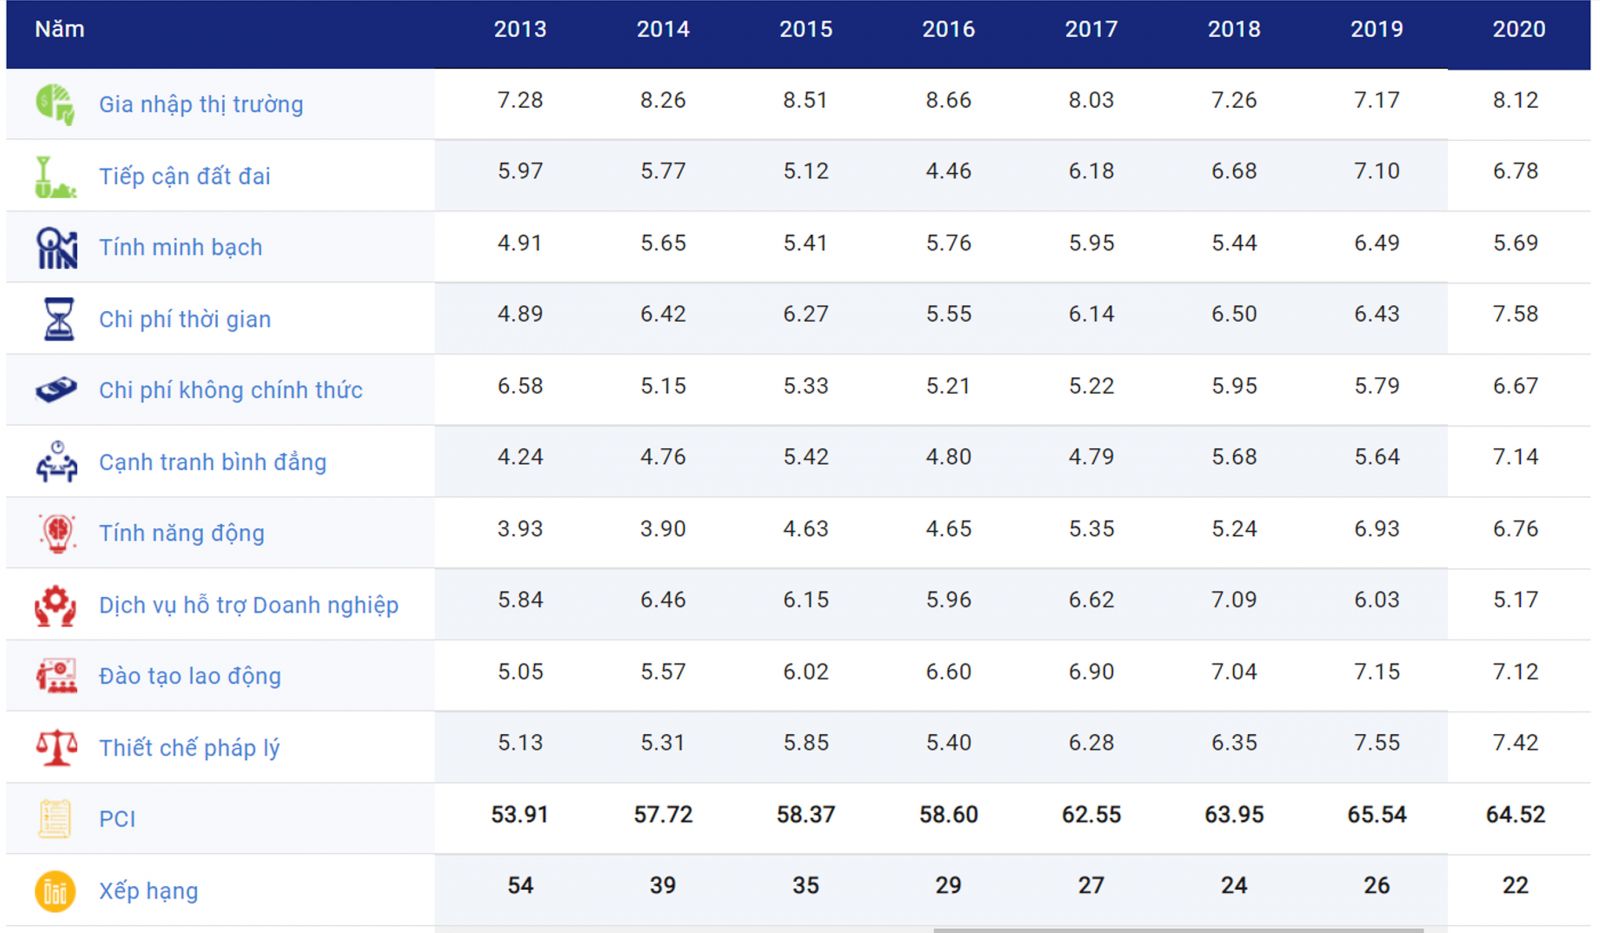 Các chỉ số xếp hạng CPI của Phú Thọ theo từng năm